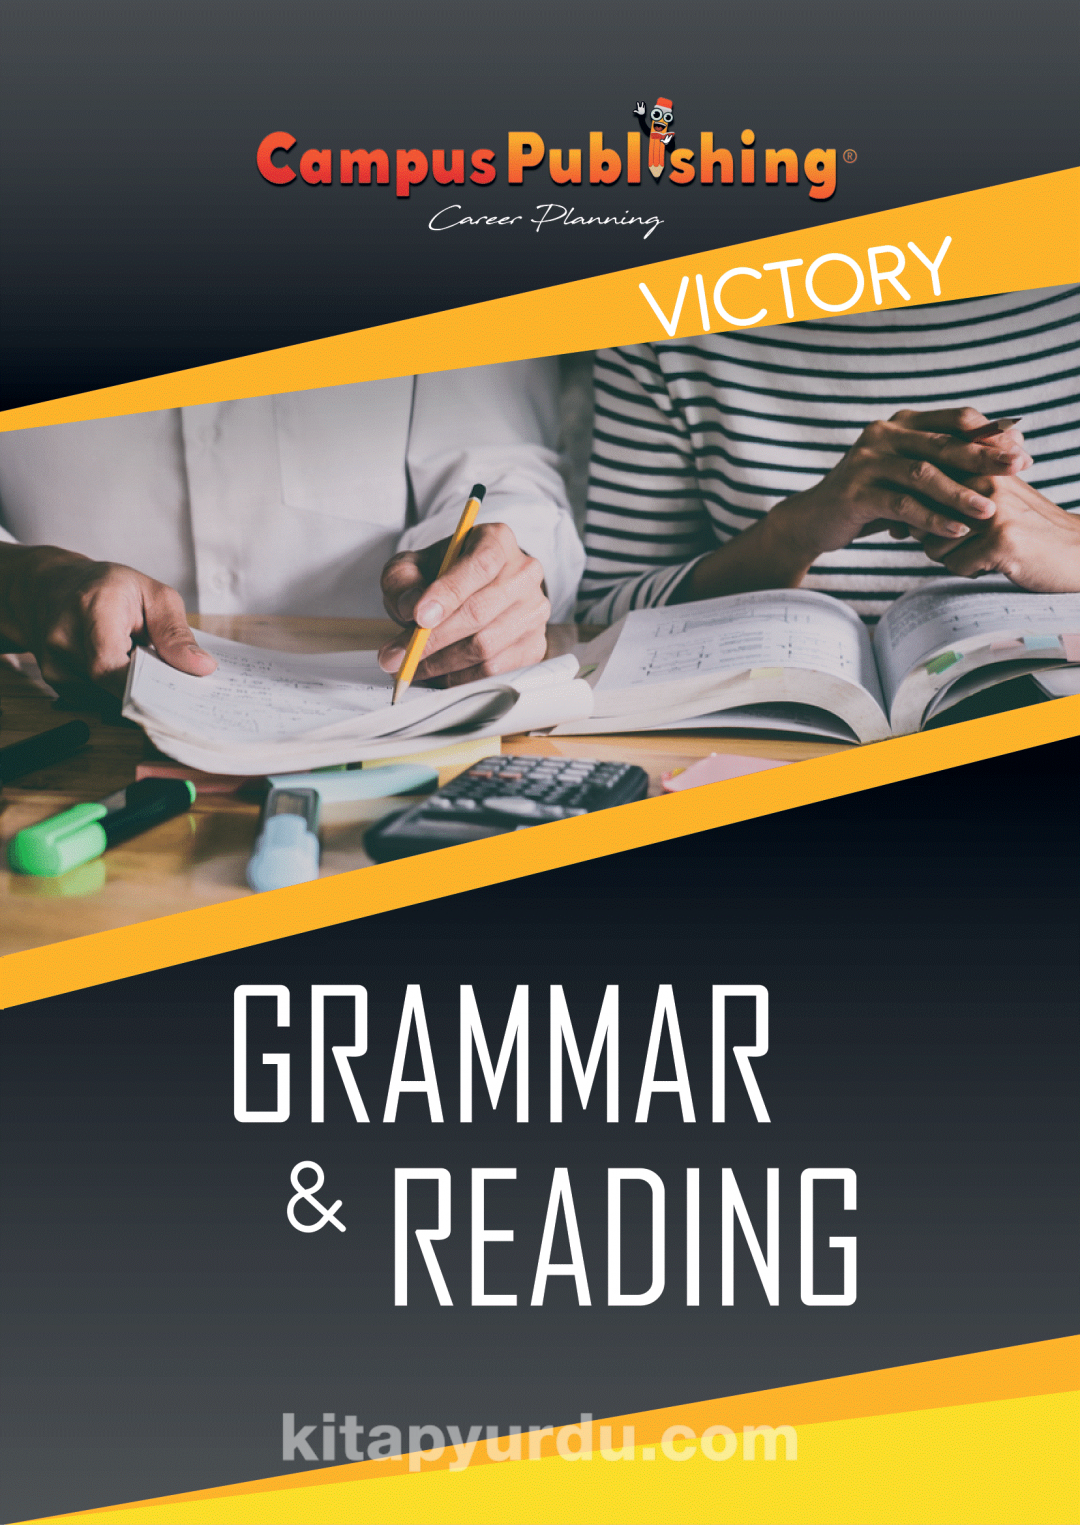 YKS Dil 11 Grammar Reading